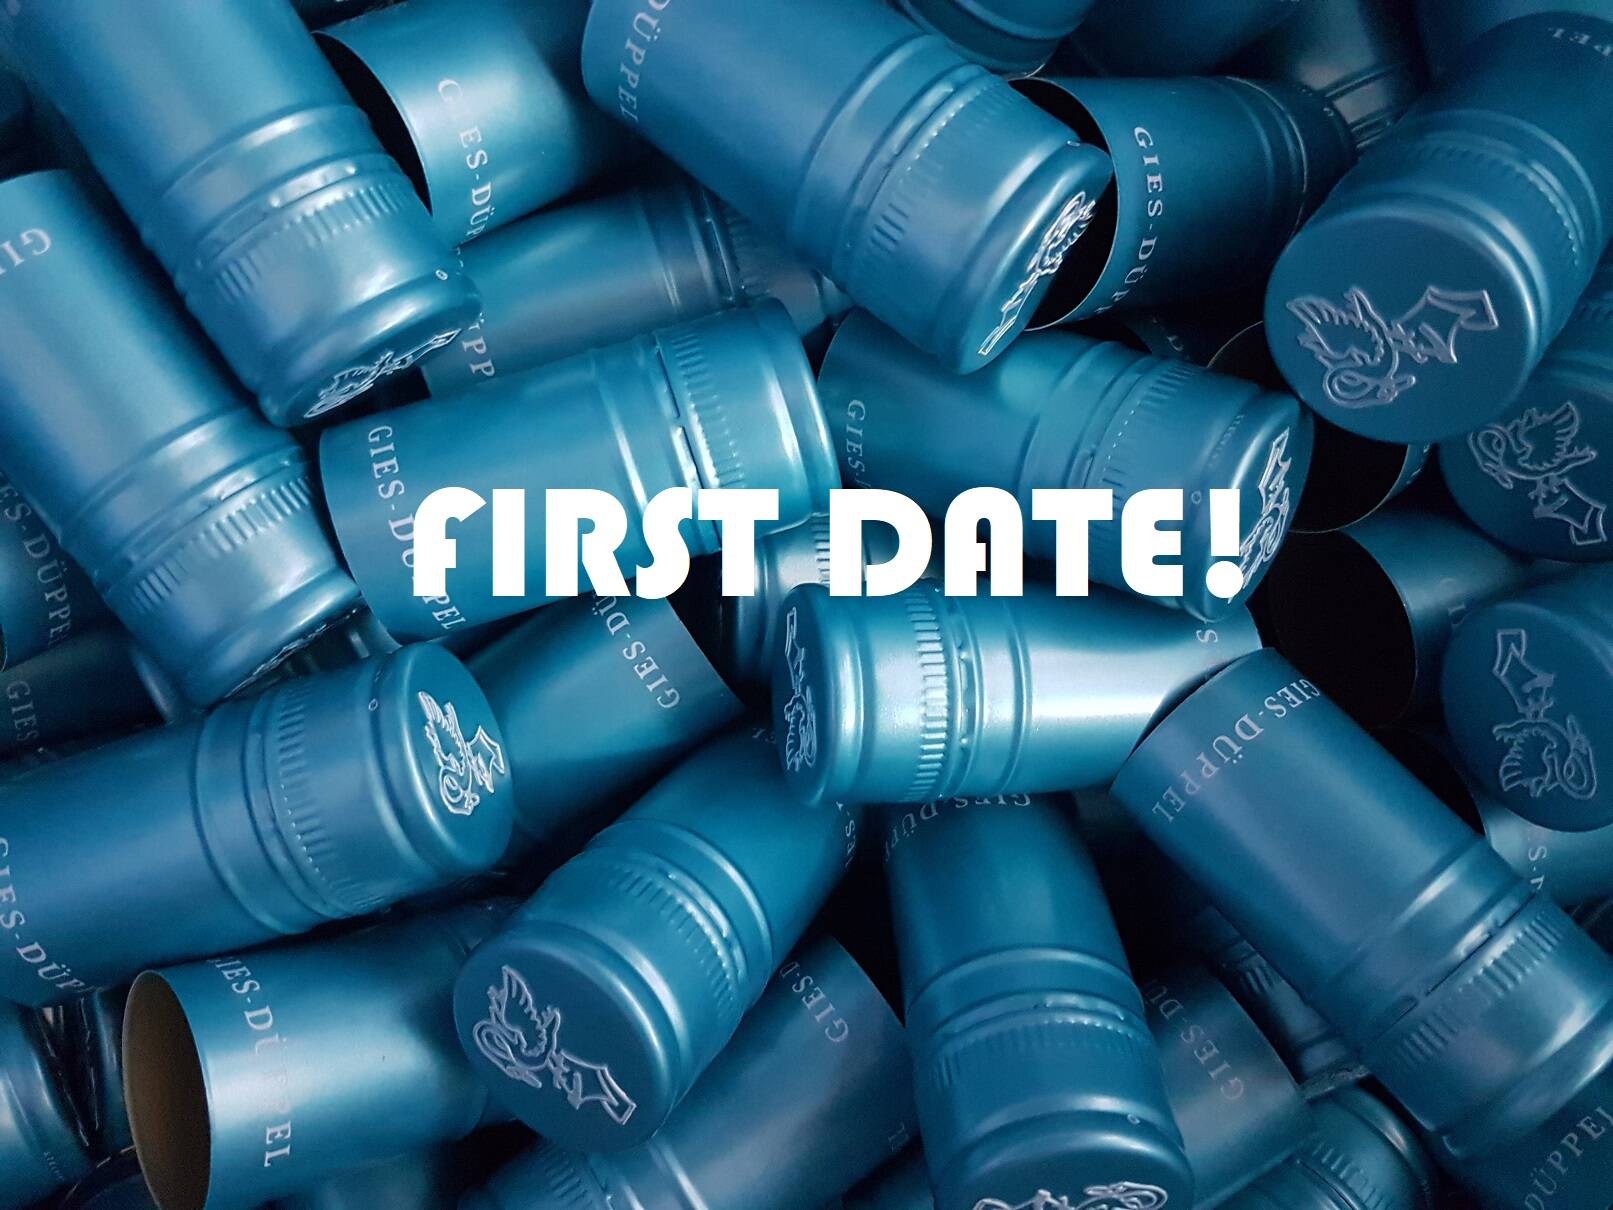 Genusspaket "First date"